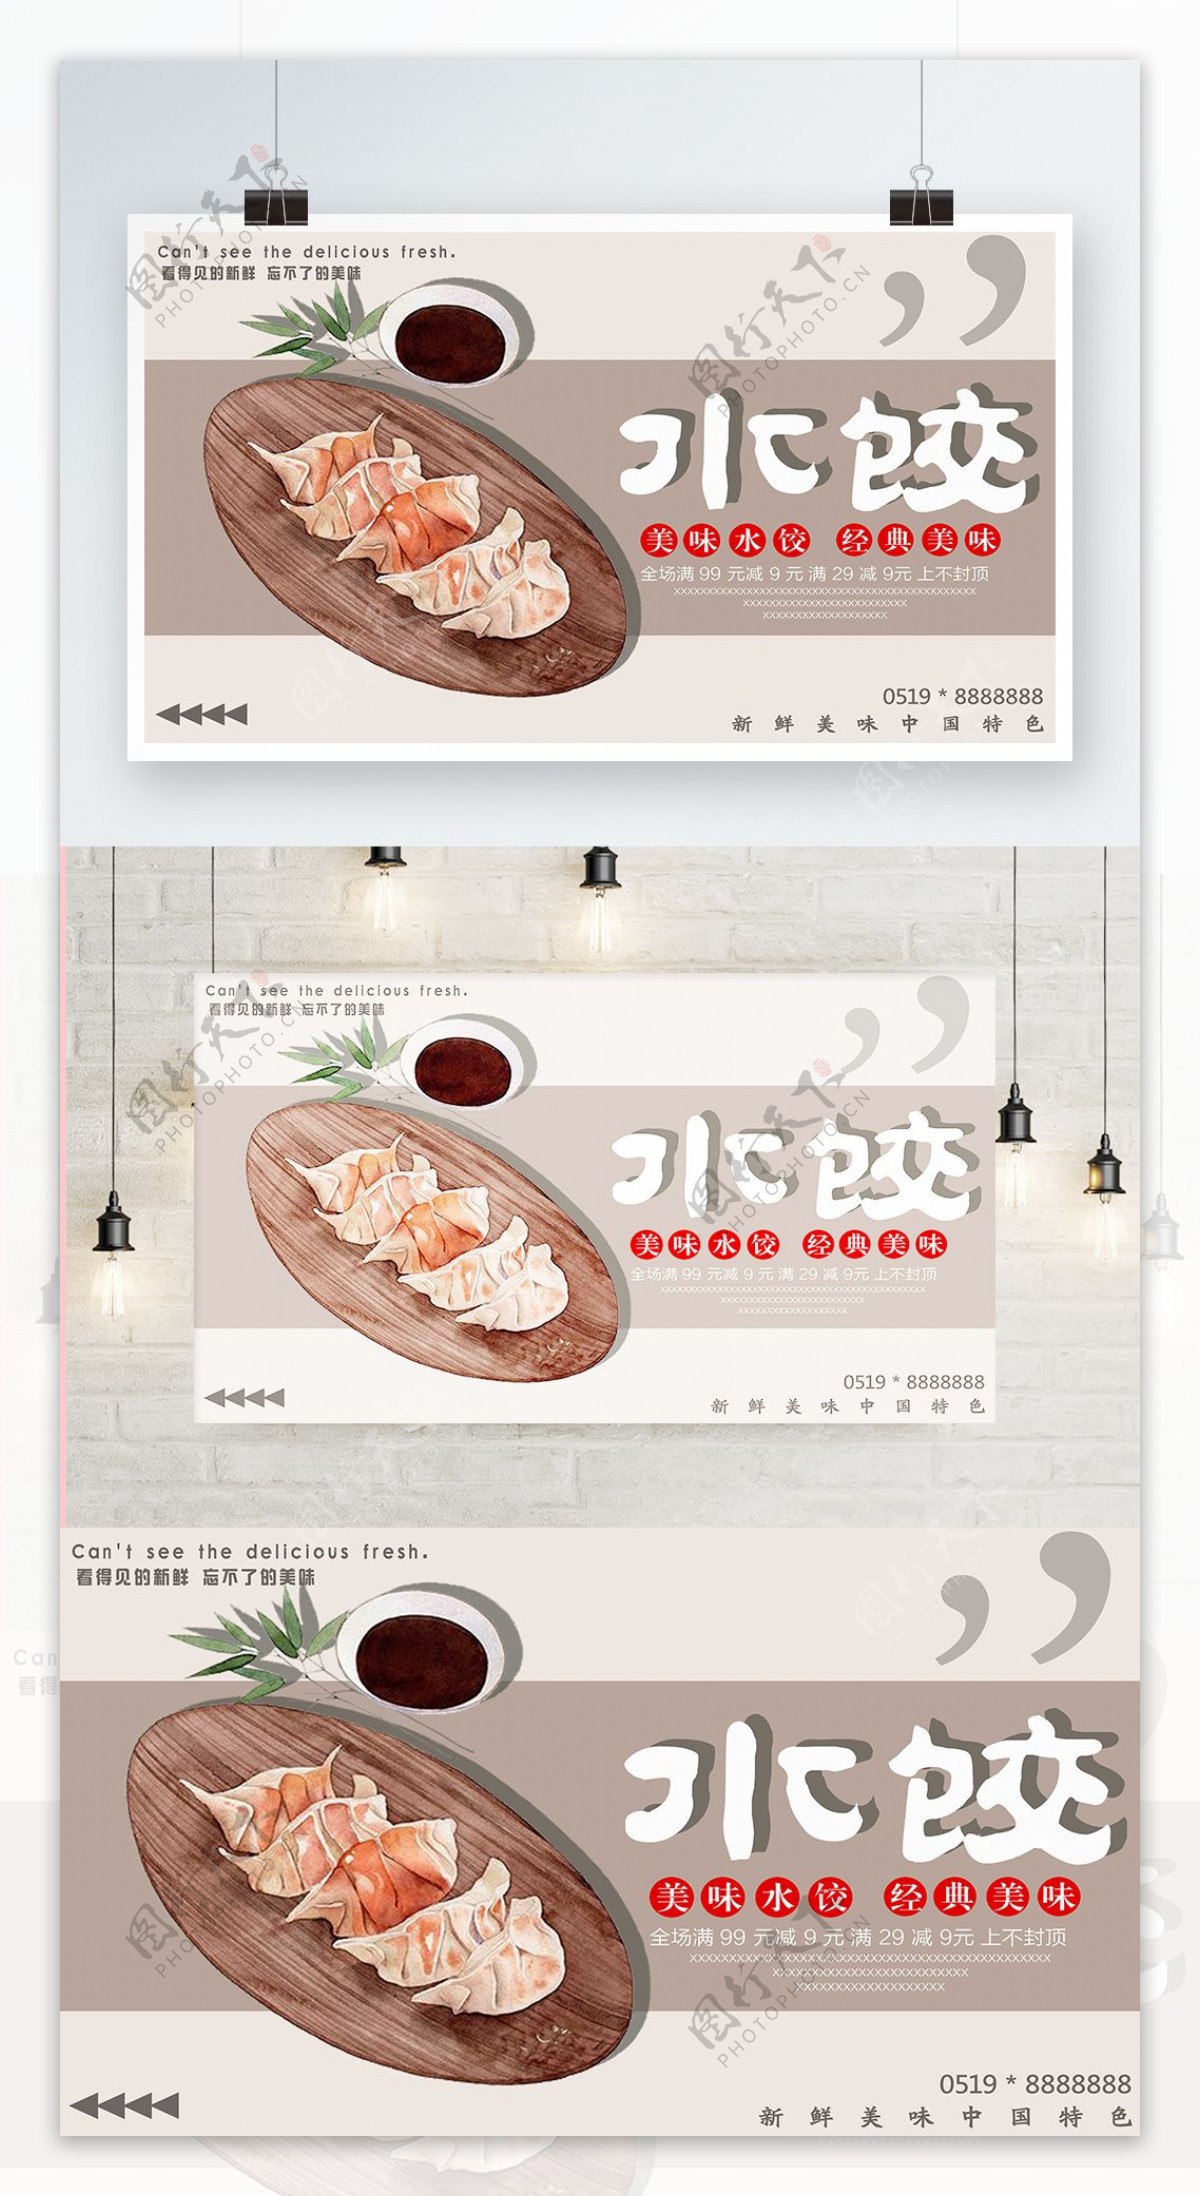 灰色背景简约大气插花风美味水饺宣传海报